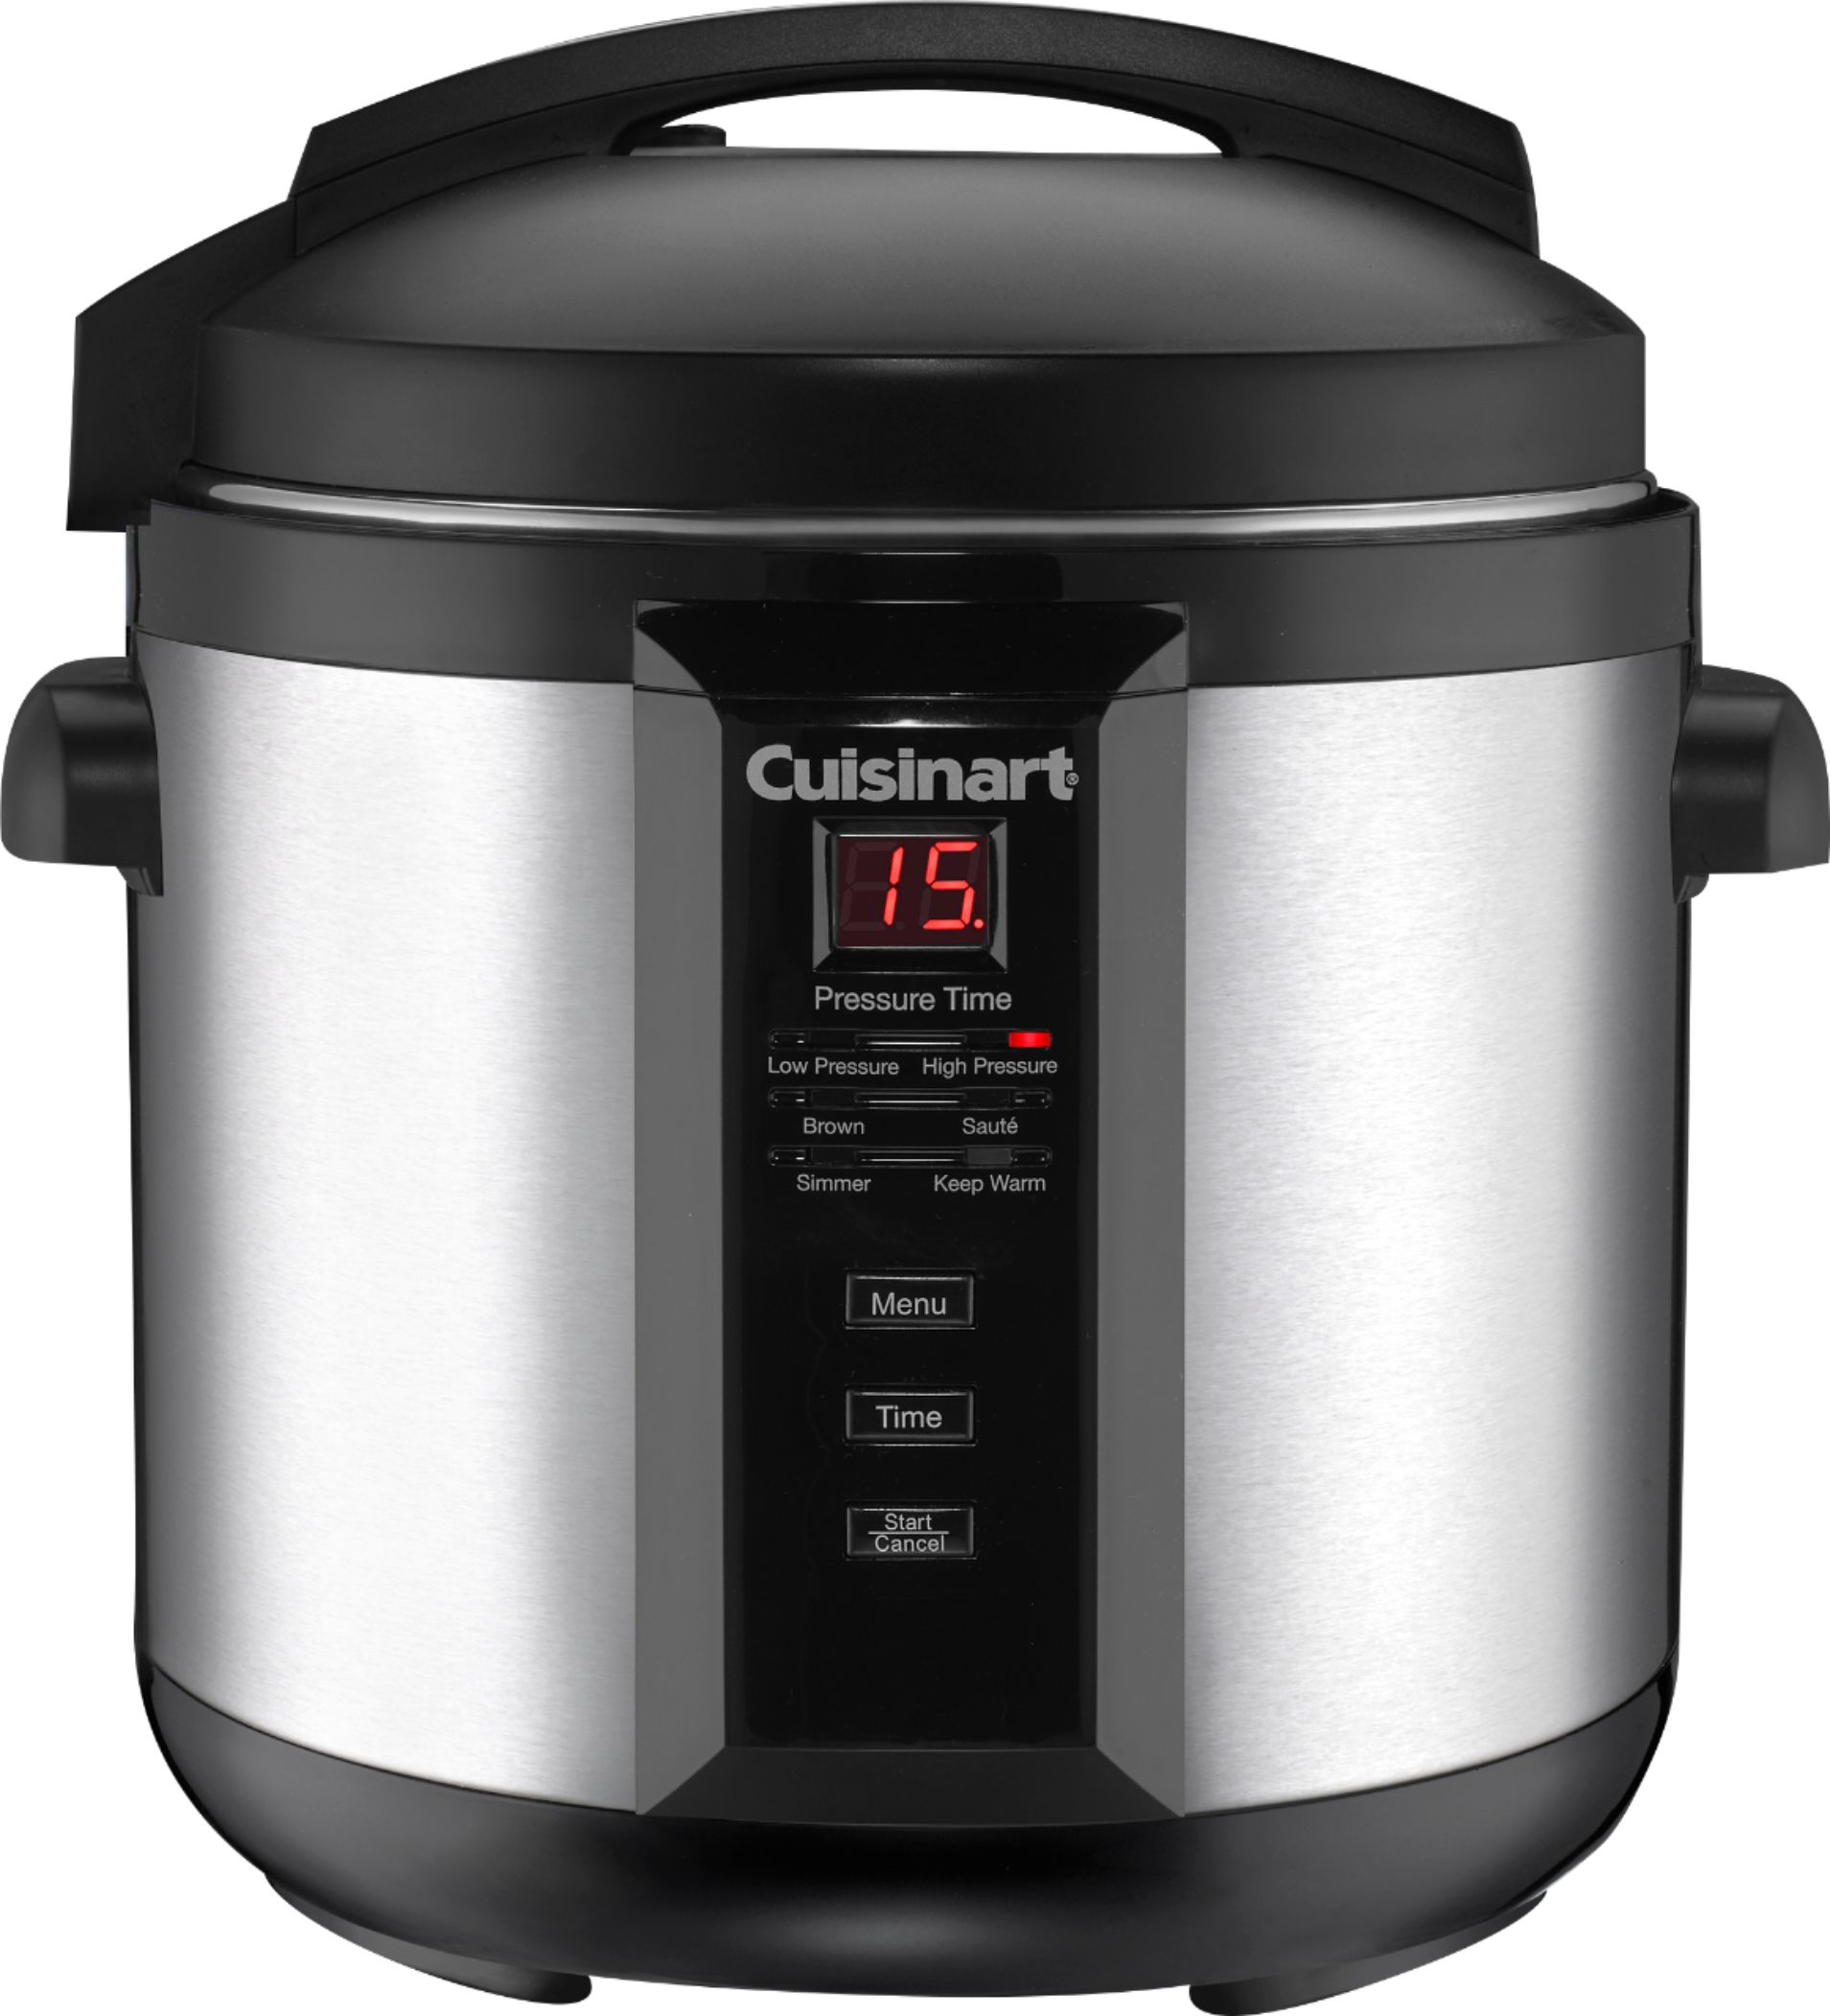 Power Cooker – NEW 6 Quart Digital Pressure Cooker Marks - appliances - by  owner - sale - craigslist